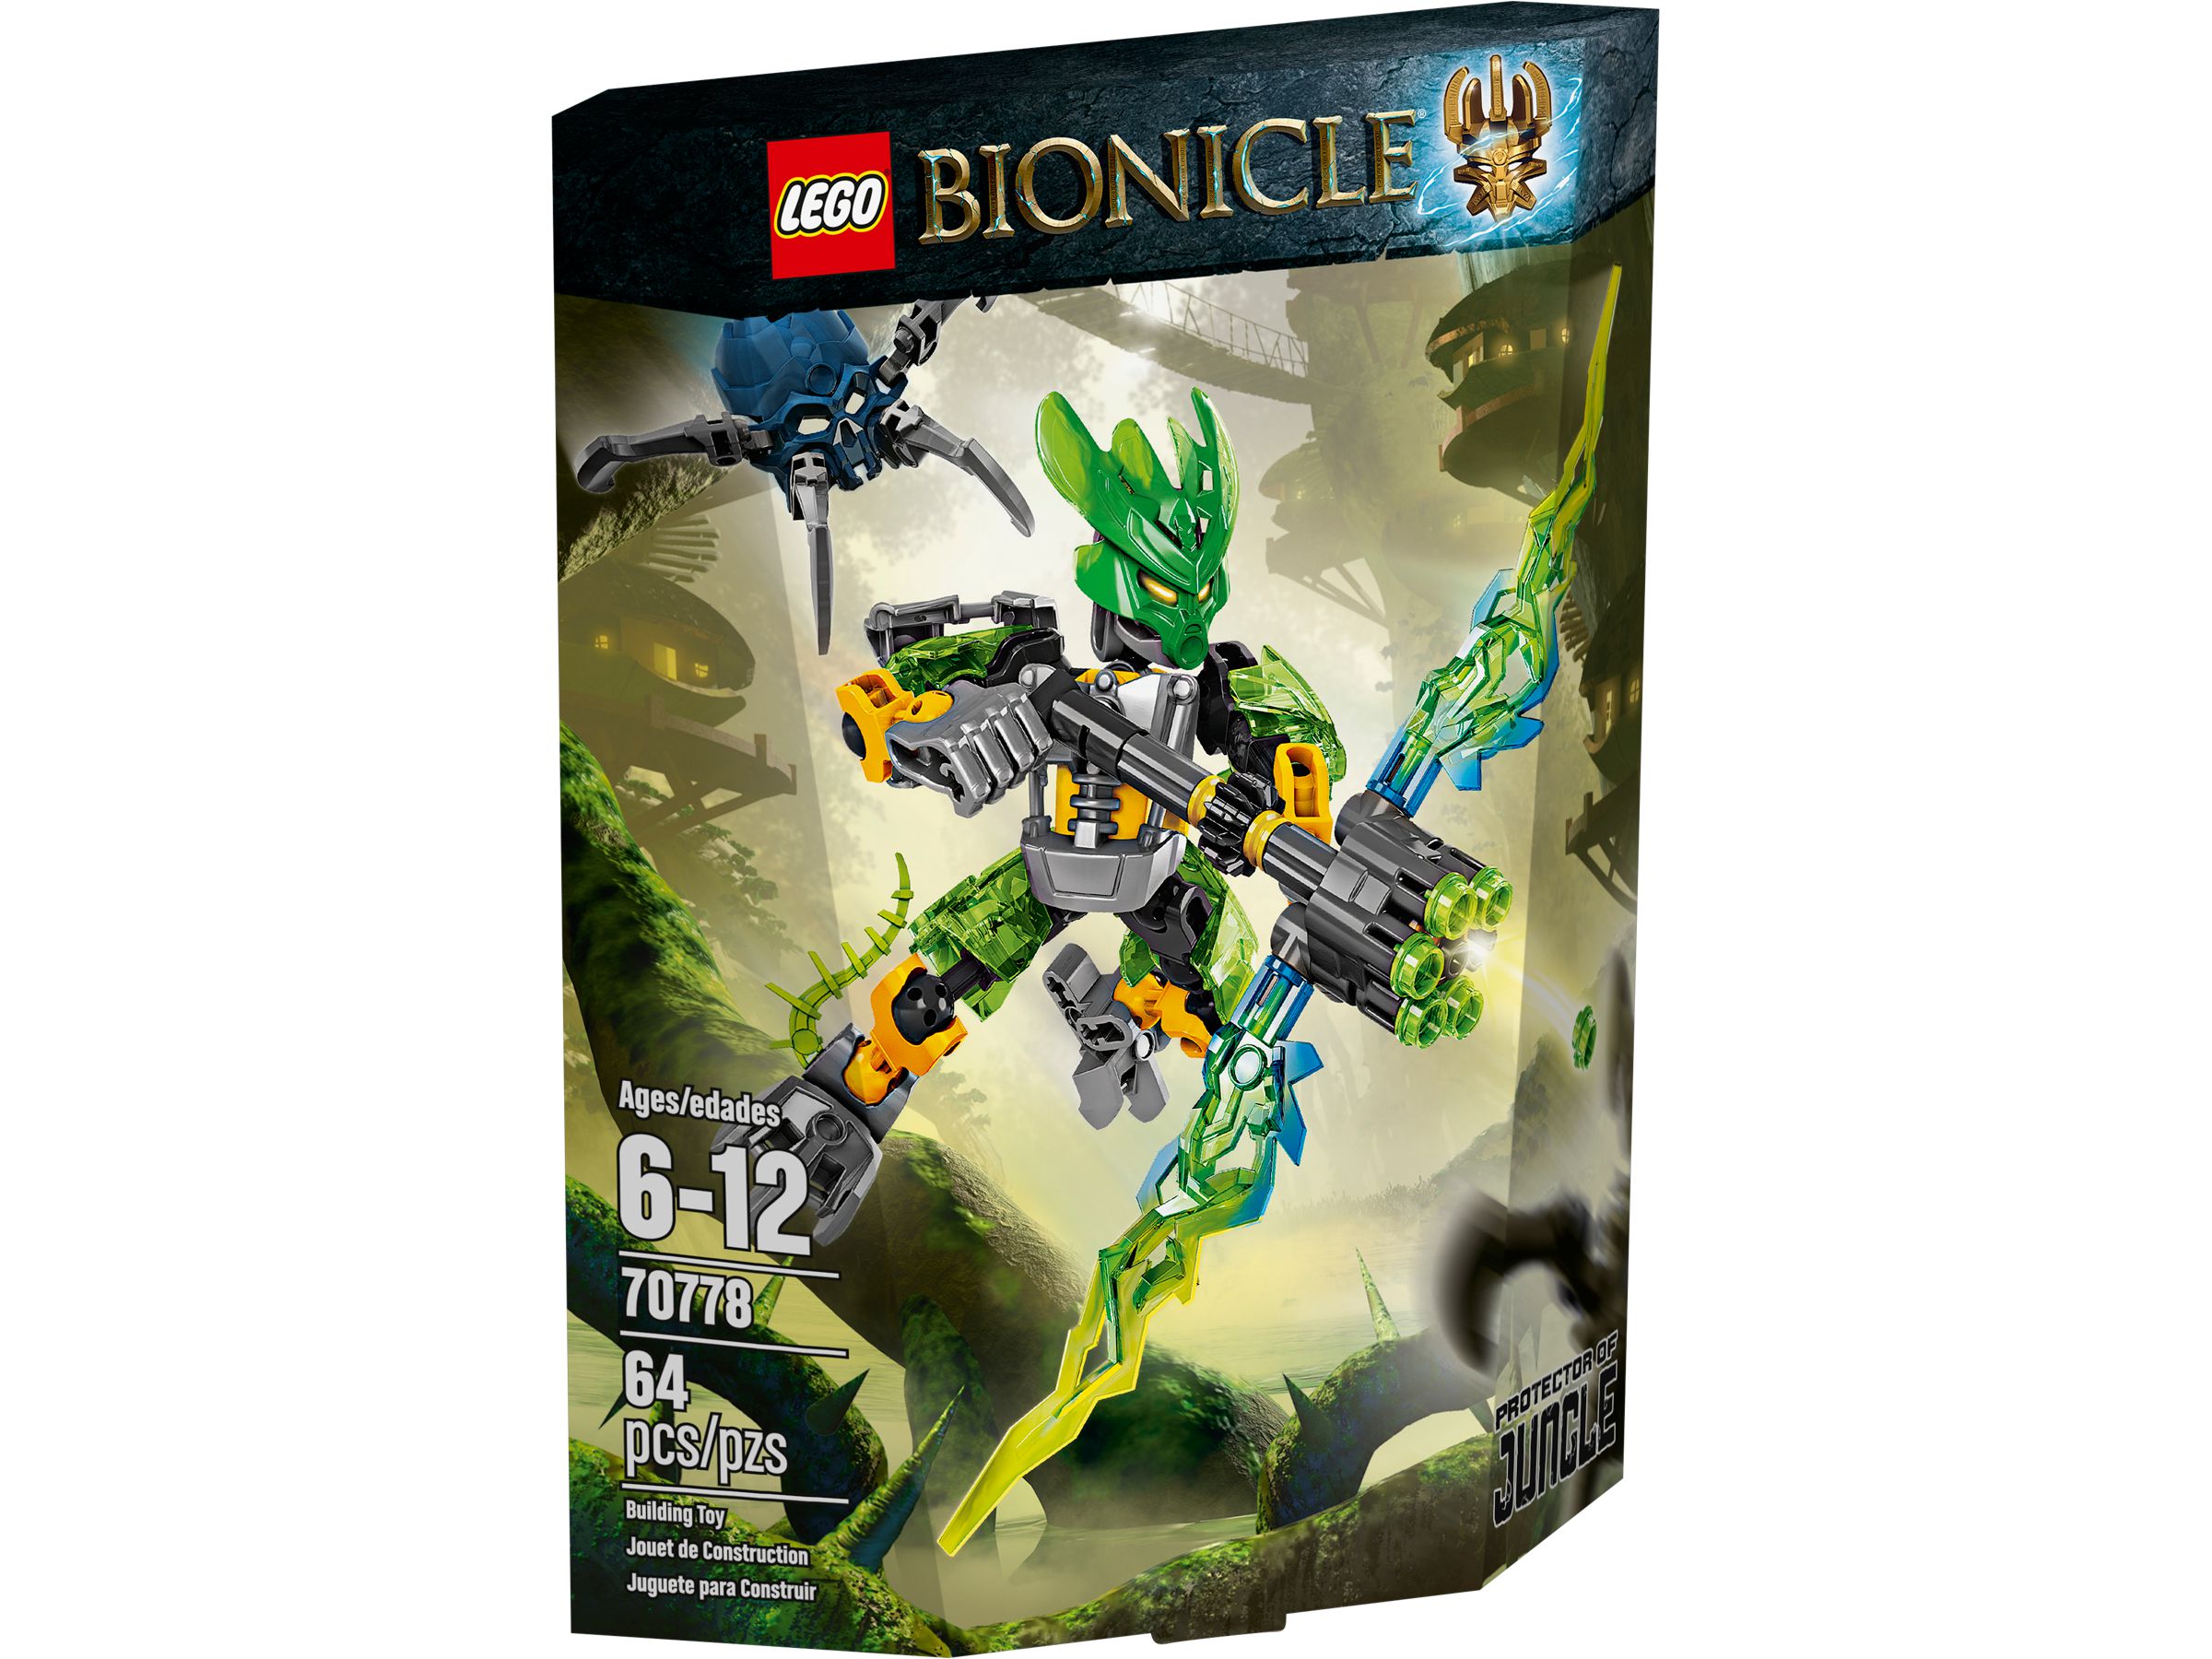 LEGO Bionicle 70778 Hüter des Dschungels LEGO_70778_alt1.jpg